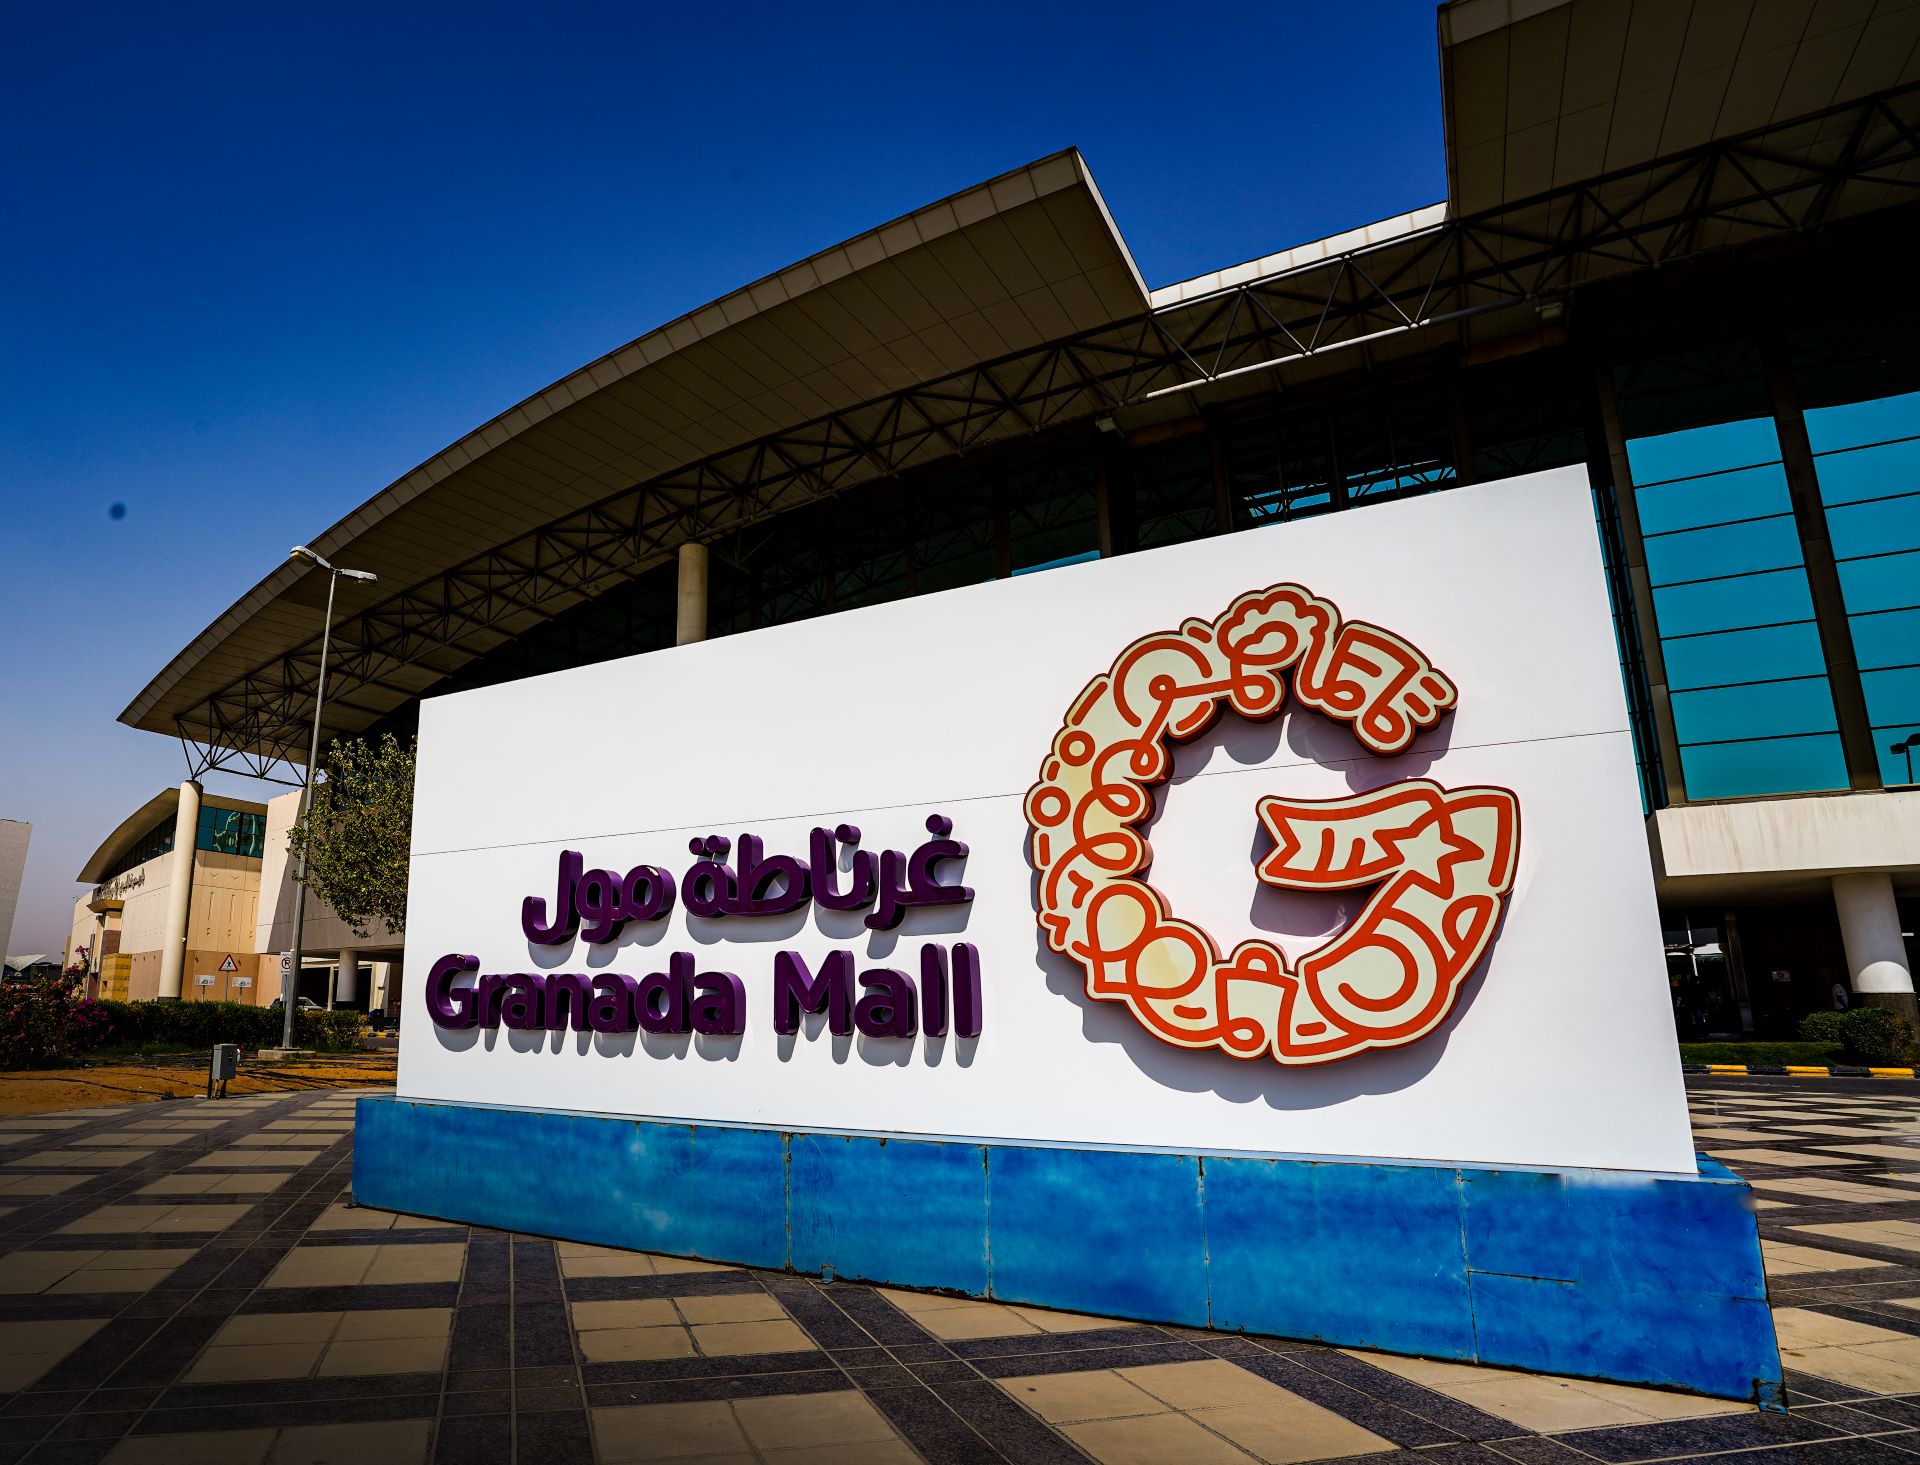 Error búnker por ciento Granada Mall - Visit Saudi Official Website